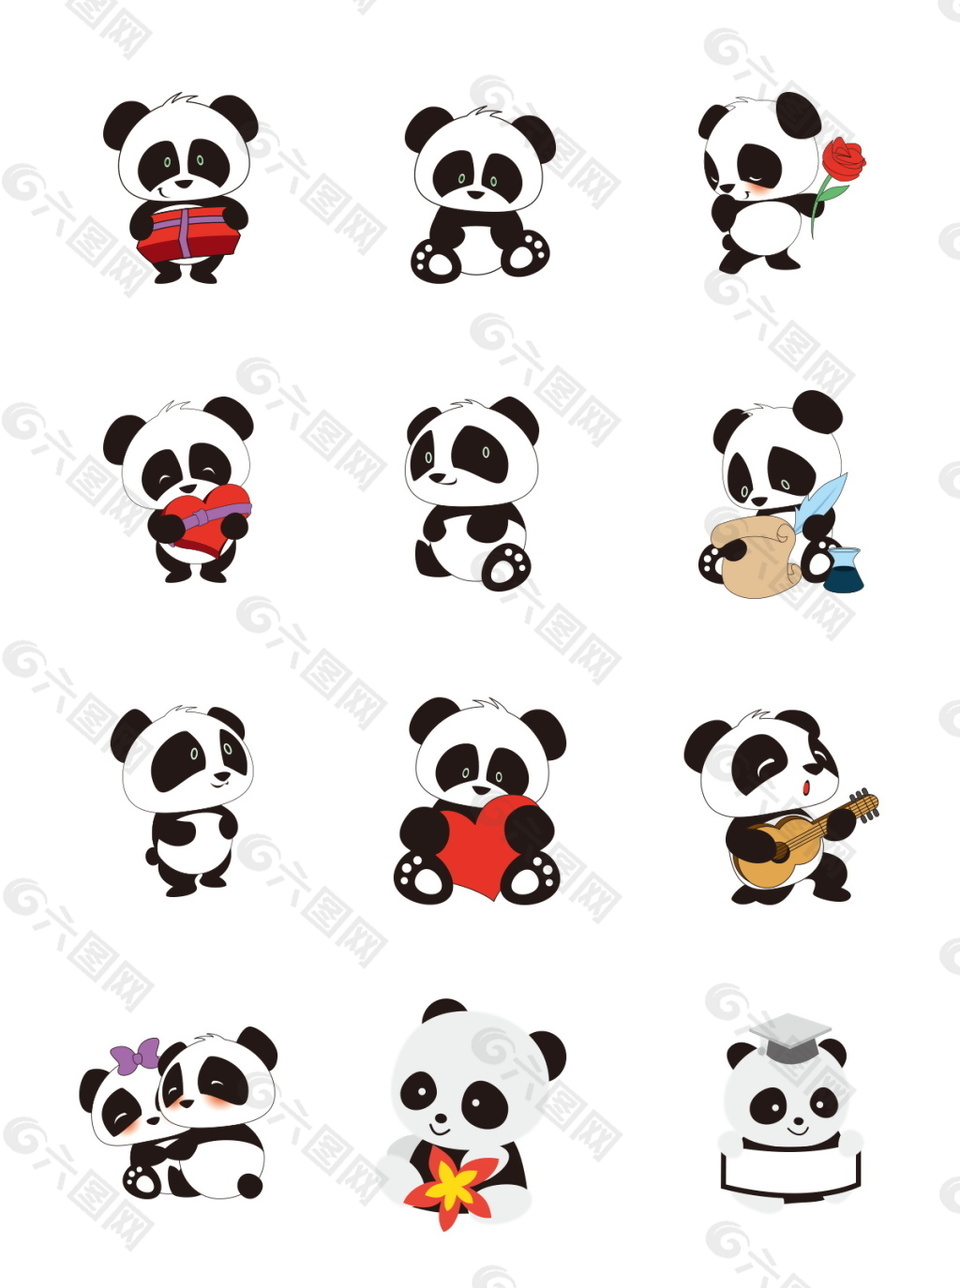 卡通熊猫元素图案集合设计模板